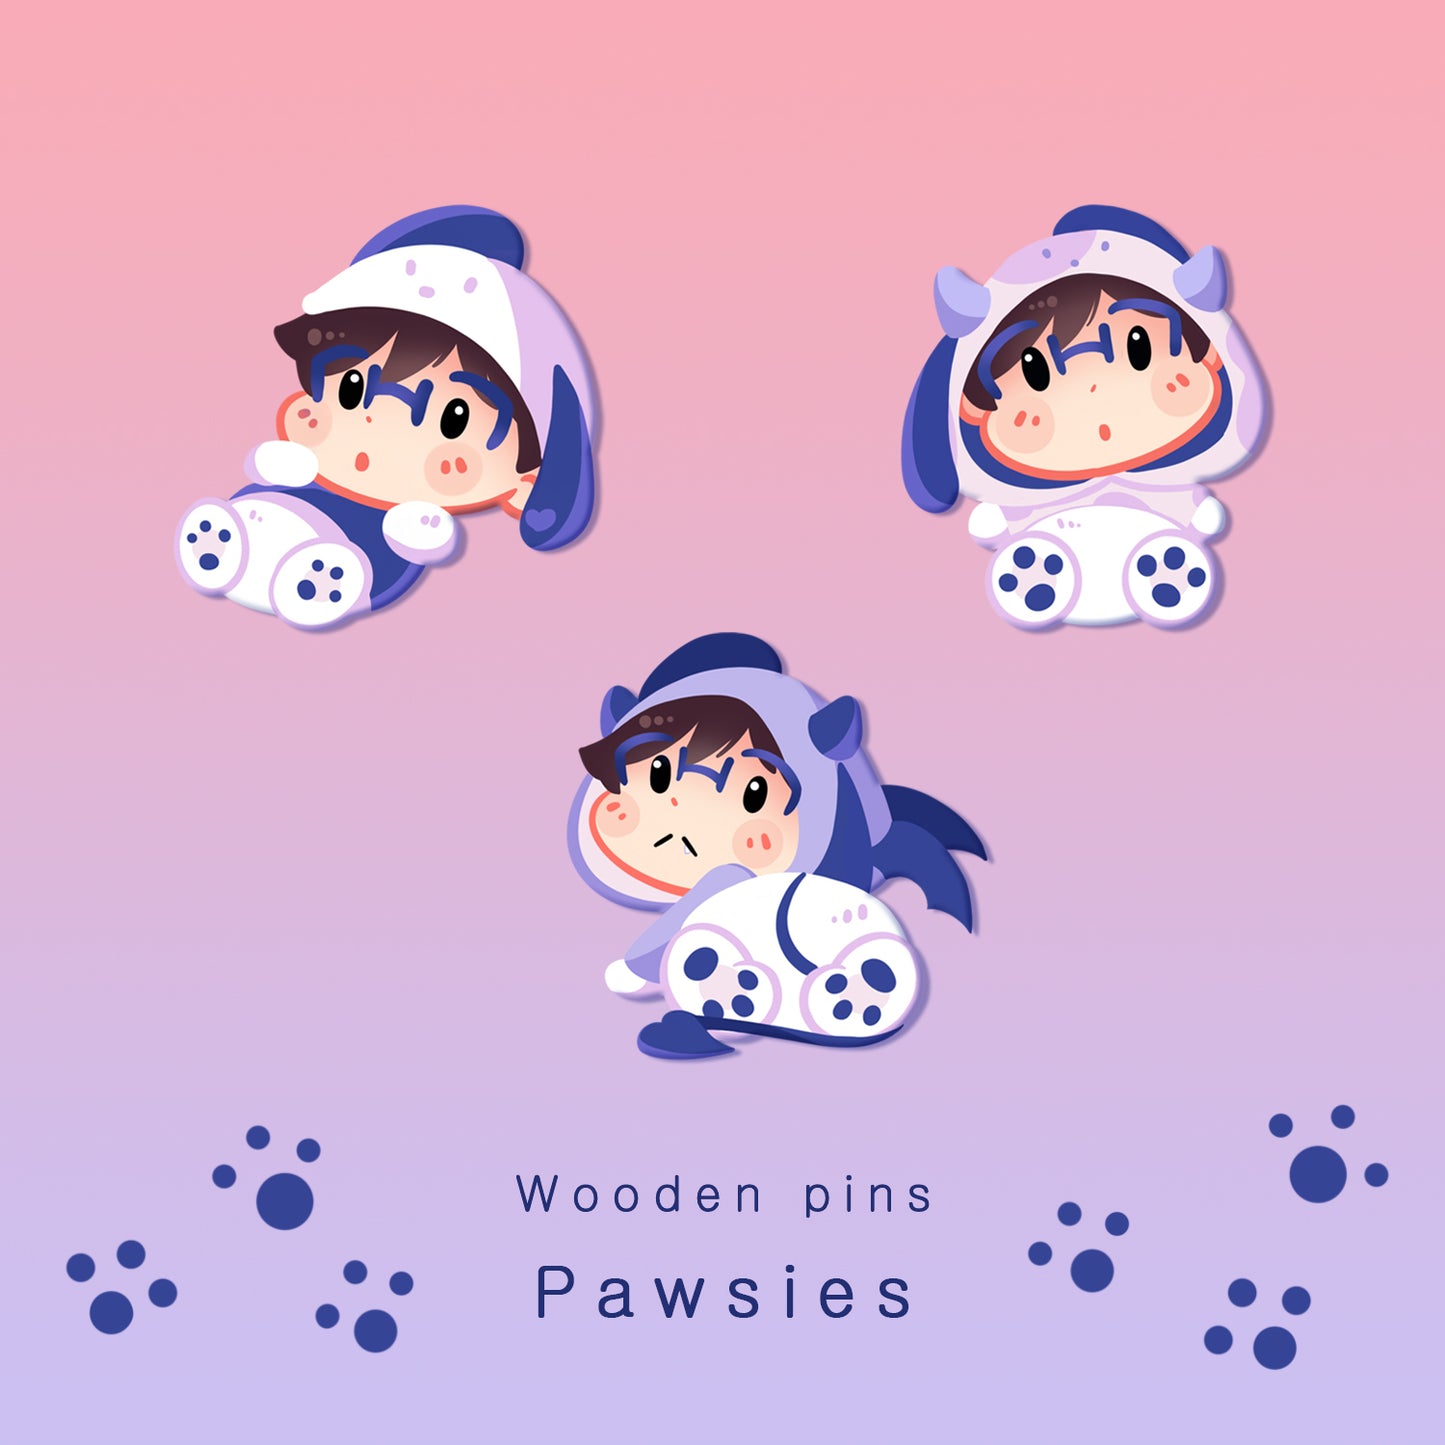 [Yuri!!! on Ice] - Pawsies - wooden pins